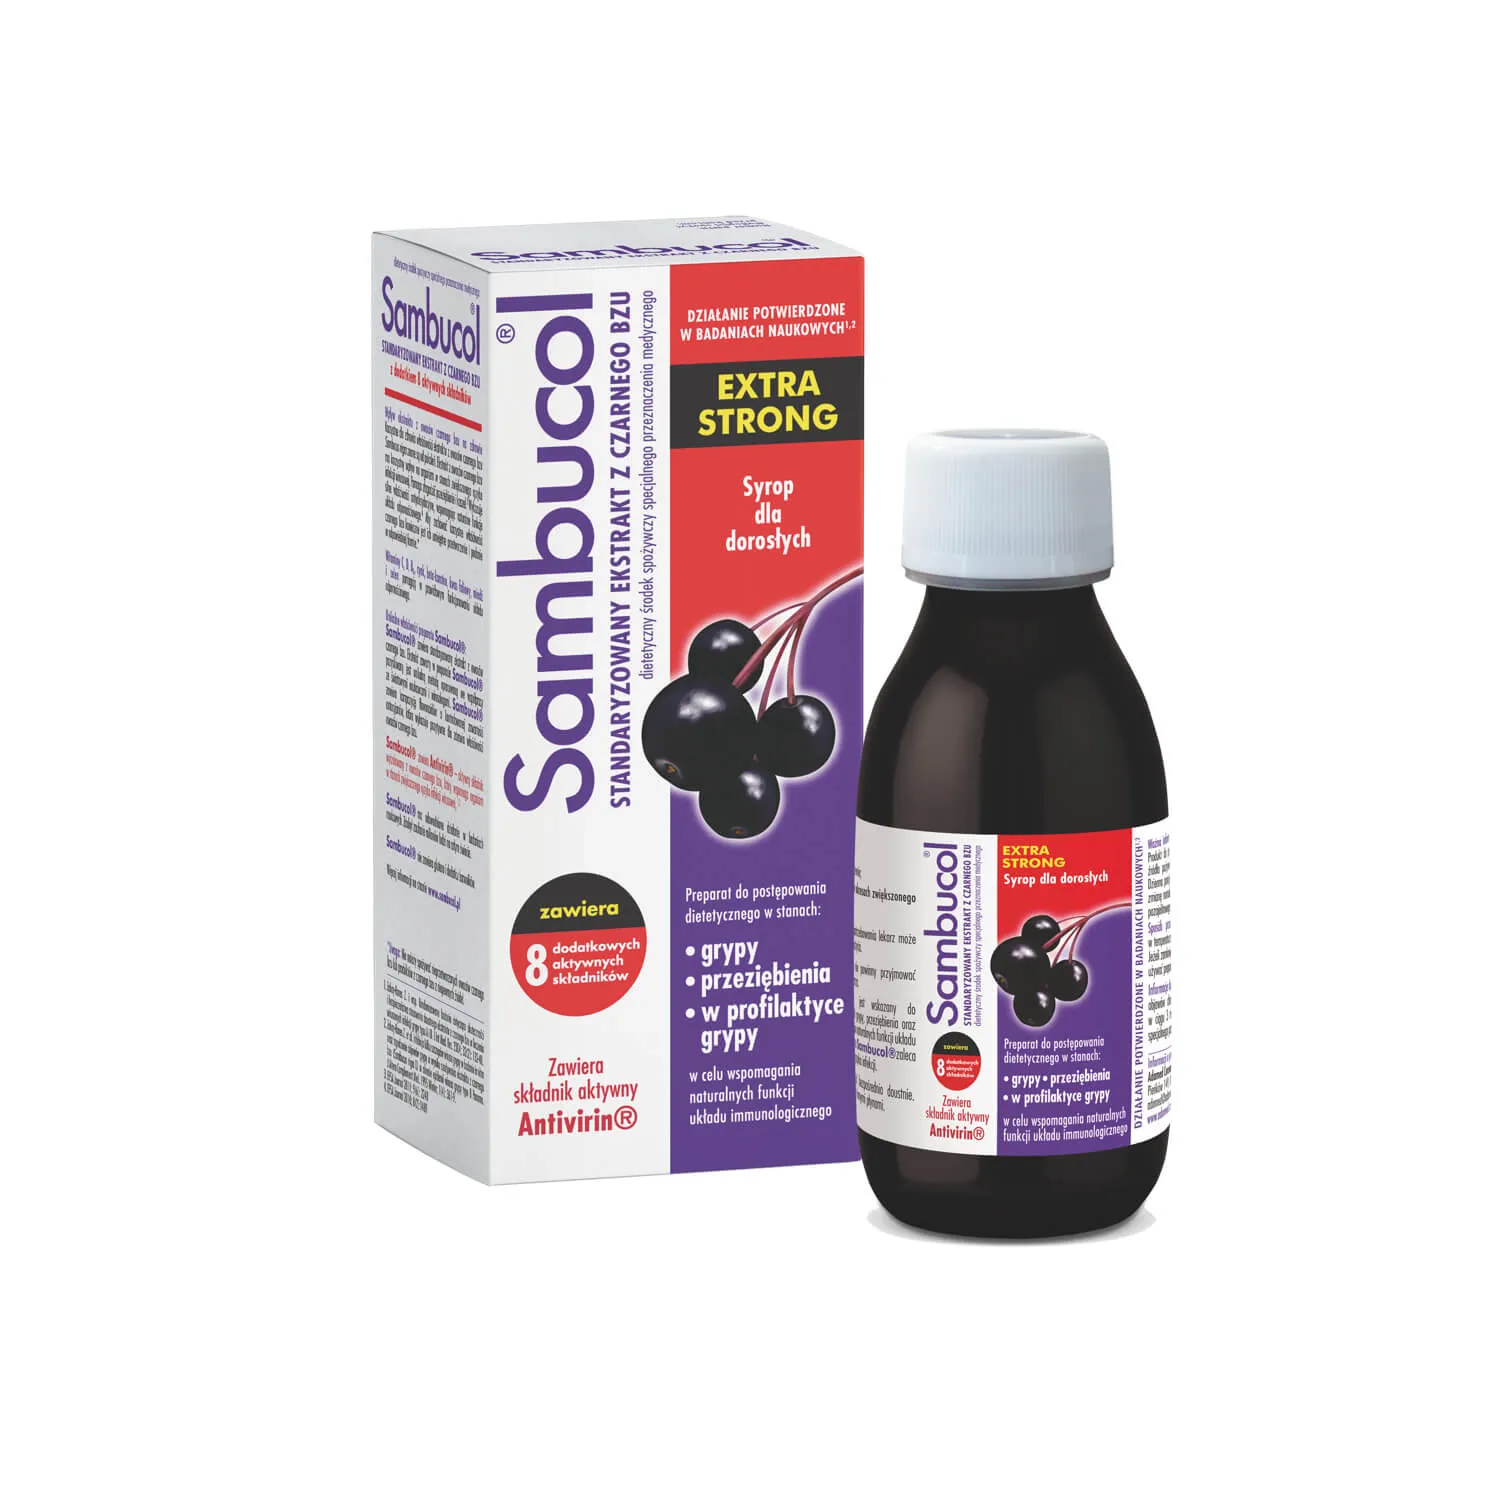 Sambucol Extra Strong, syrop dla dorosłych, 120 ml